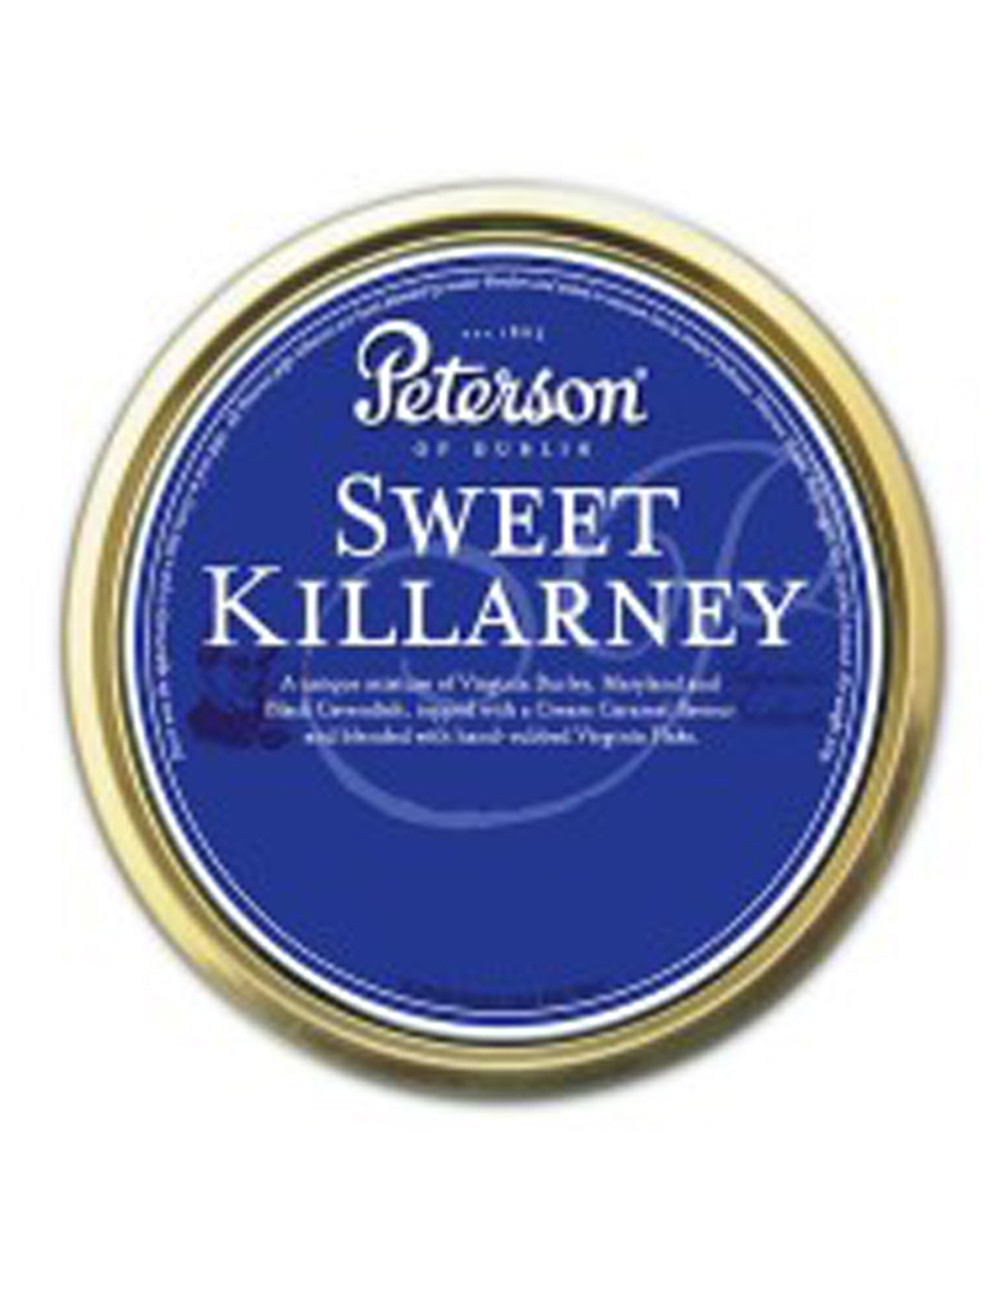 Sweet killarney